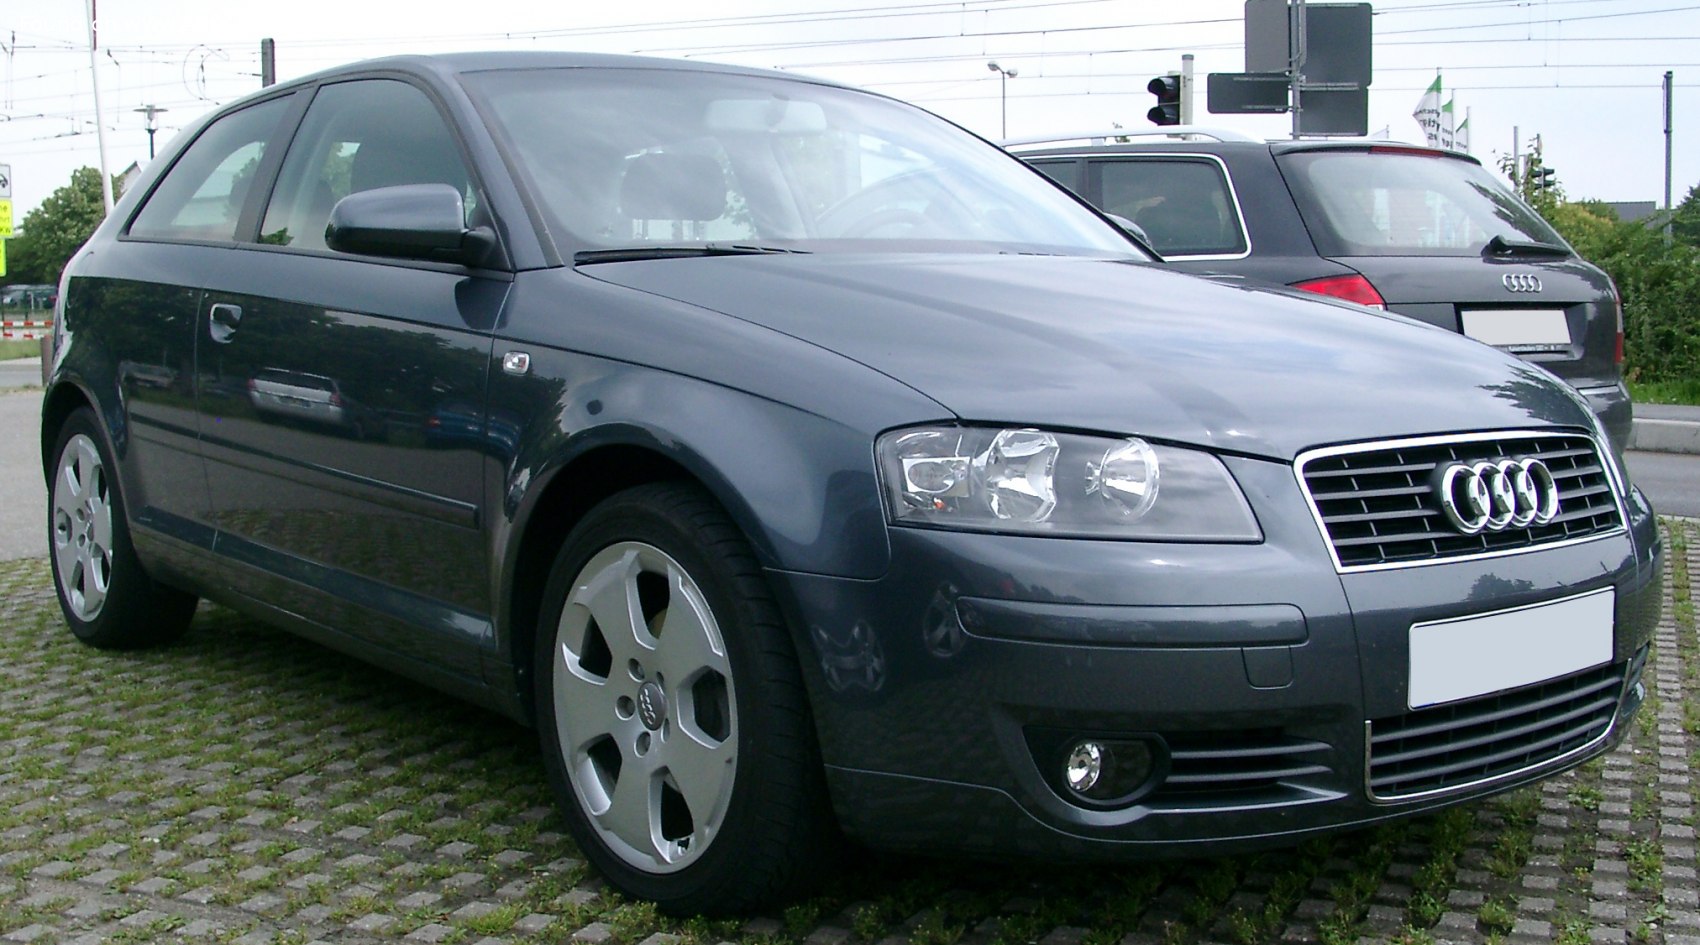 2003 Audi A3 (8P) 1.9 TDI (105 Hp)  Technical specs, data, fuel  consumption, Dimensions